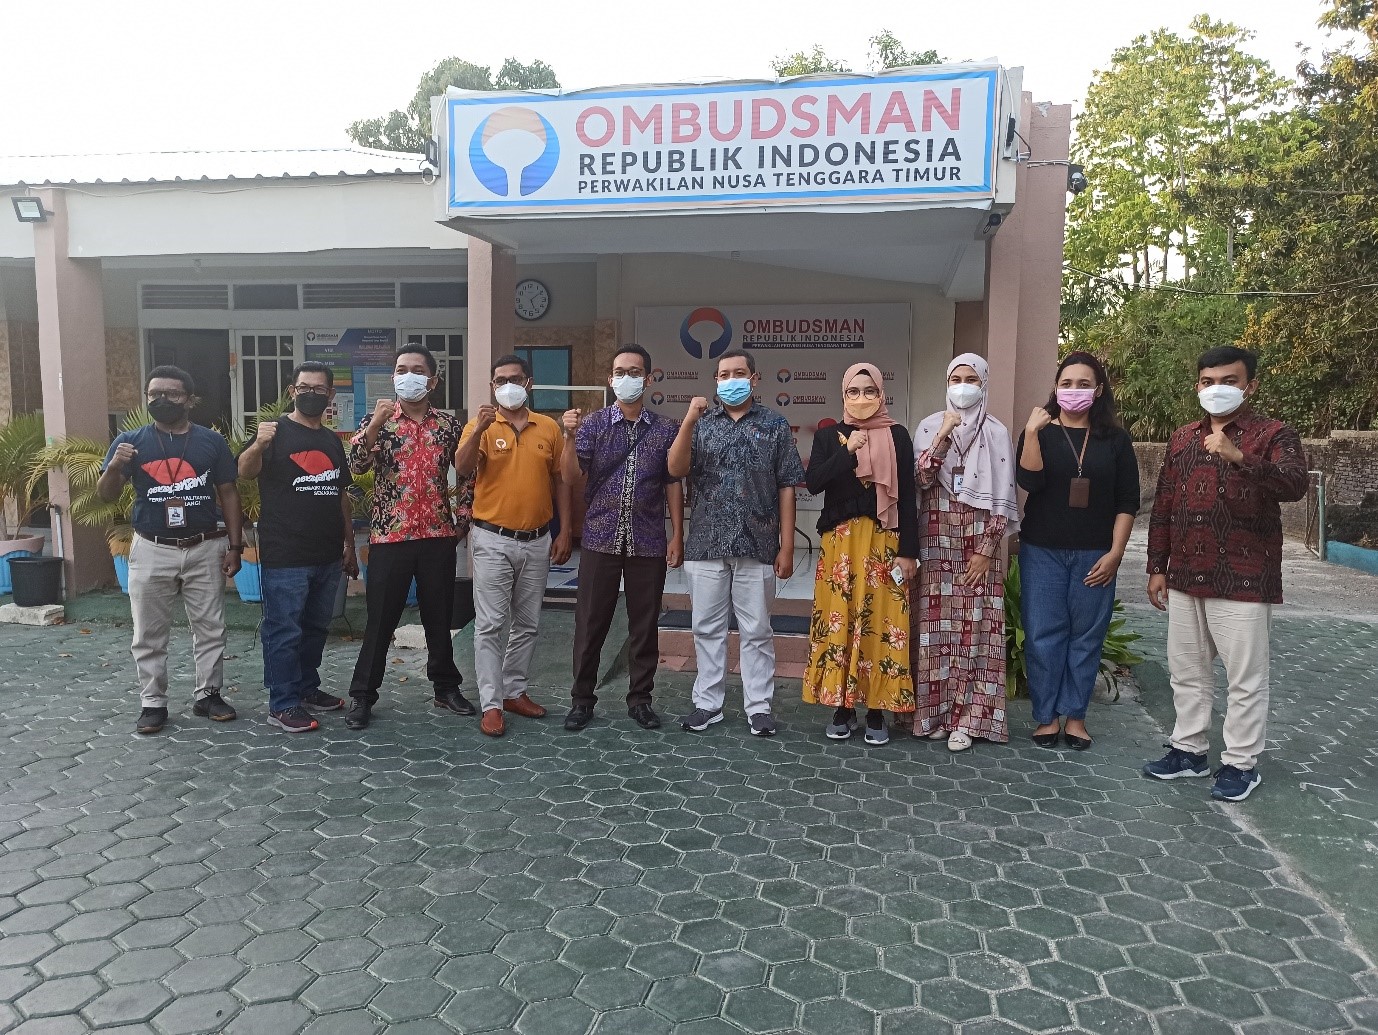 Bappenas dan Ombudsman RI Pantau Langsung Pelayanan Publik di Provinsi Nusa Tenggara Timur